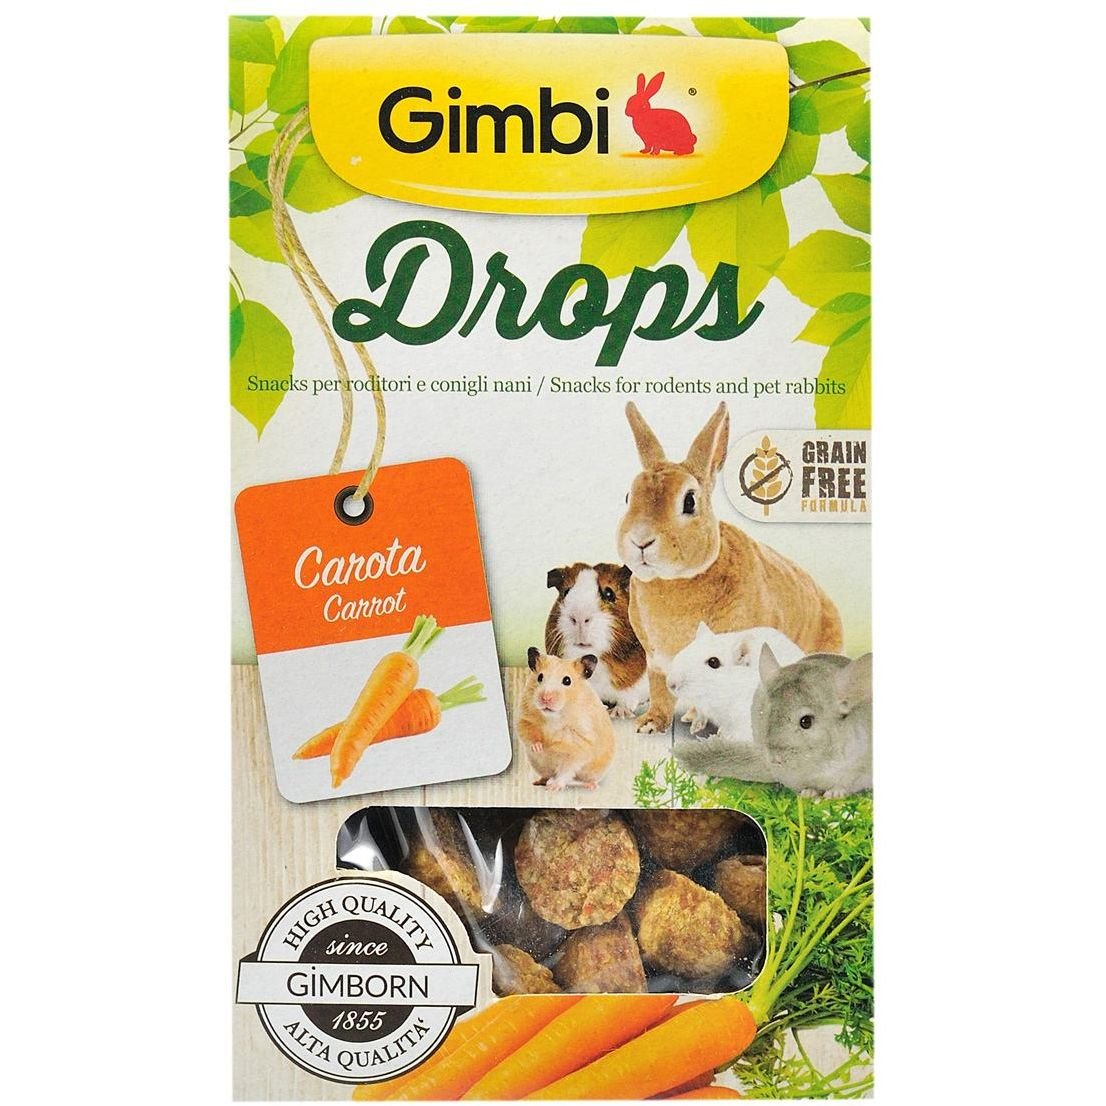 Ласощі Gimbi Drops для гризунів, дропси з морквою, 50 г - фото 3